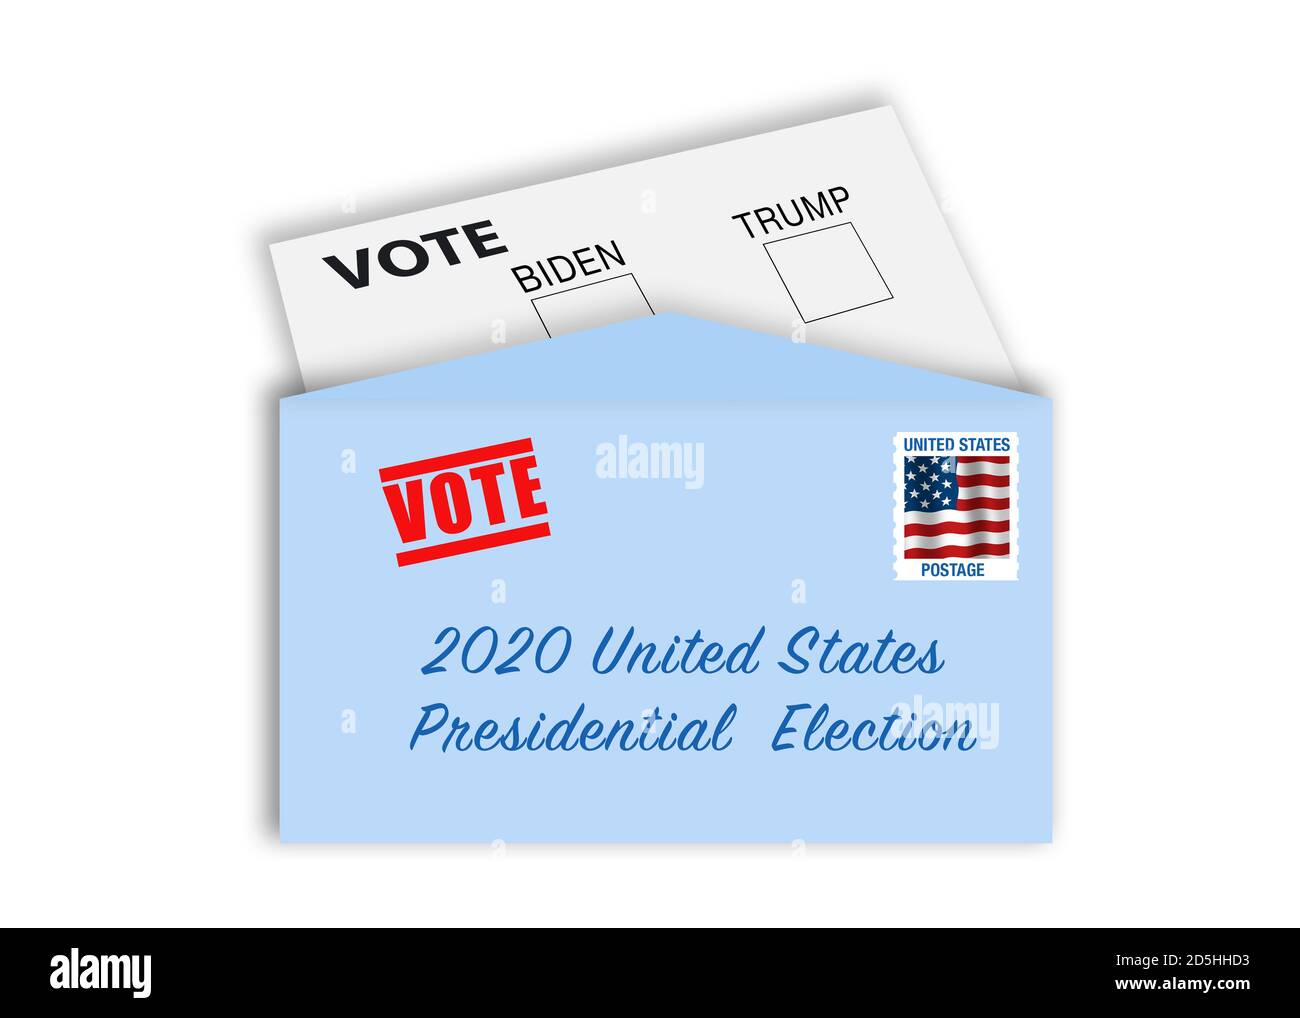 Abstimmung per Brief Konzept - Umschlag mit Stempel, Adresse und Stimmkarte mit Kontrollkästchen der Kandidaten Biden und Trump. Staaten machen es einfacher f Stockfoto